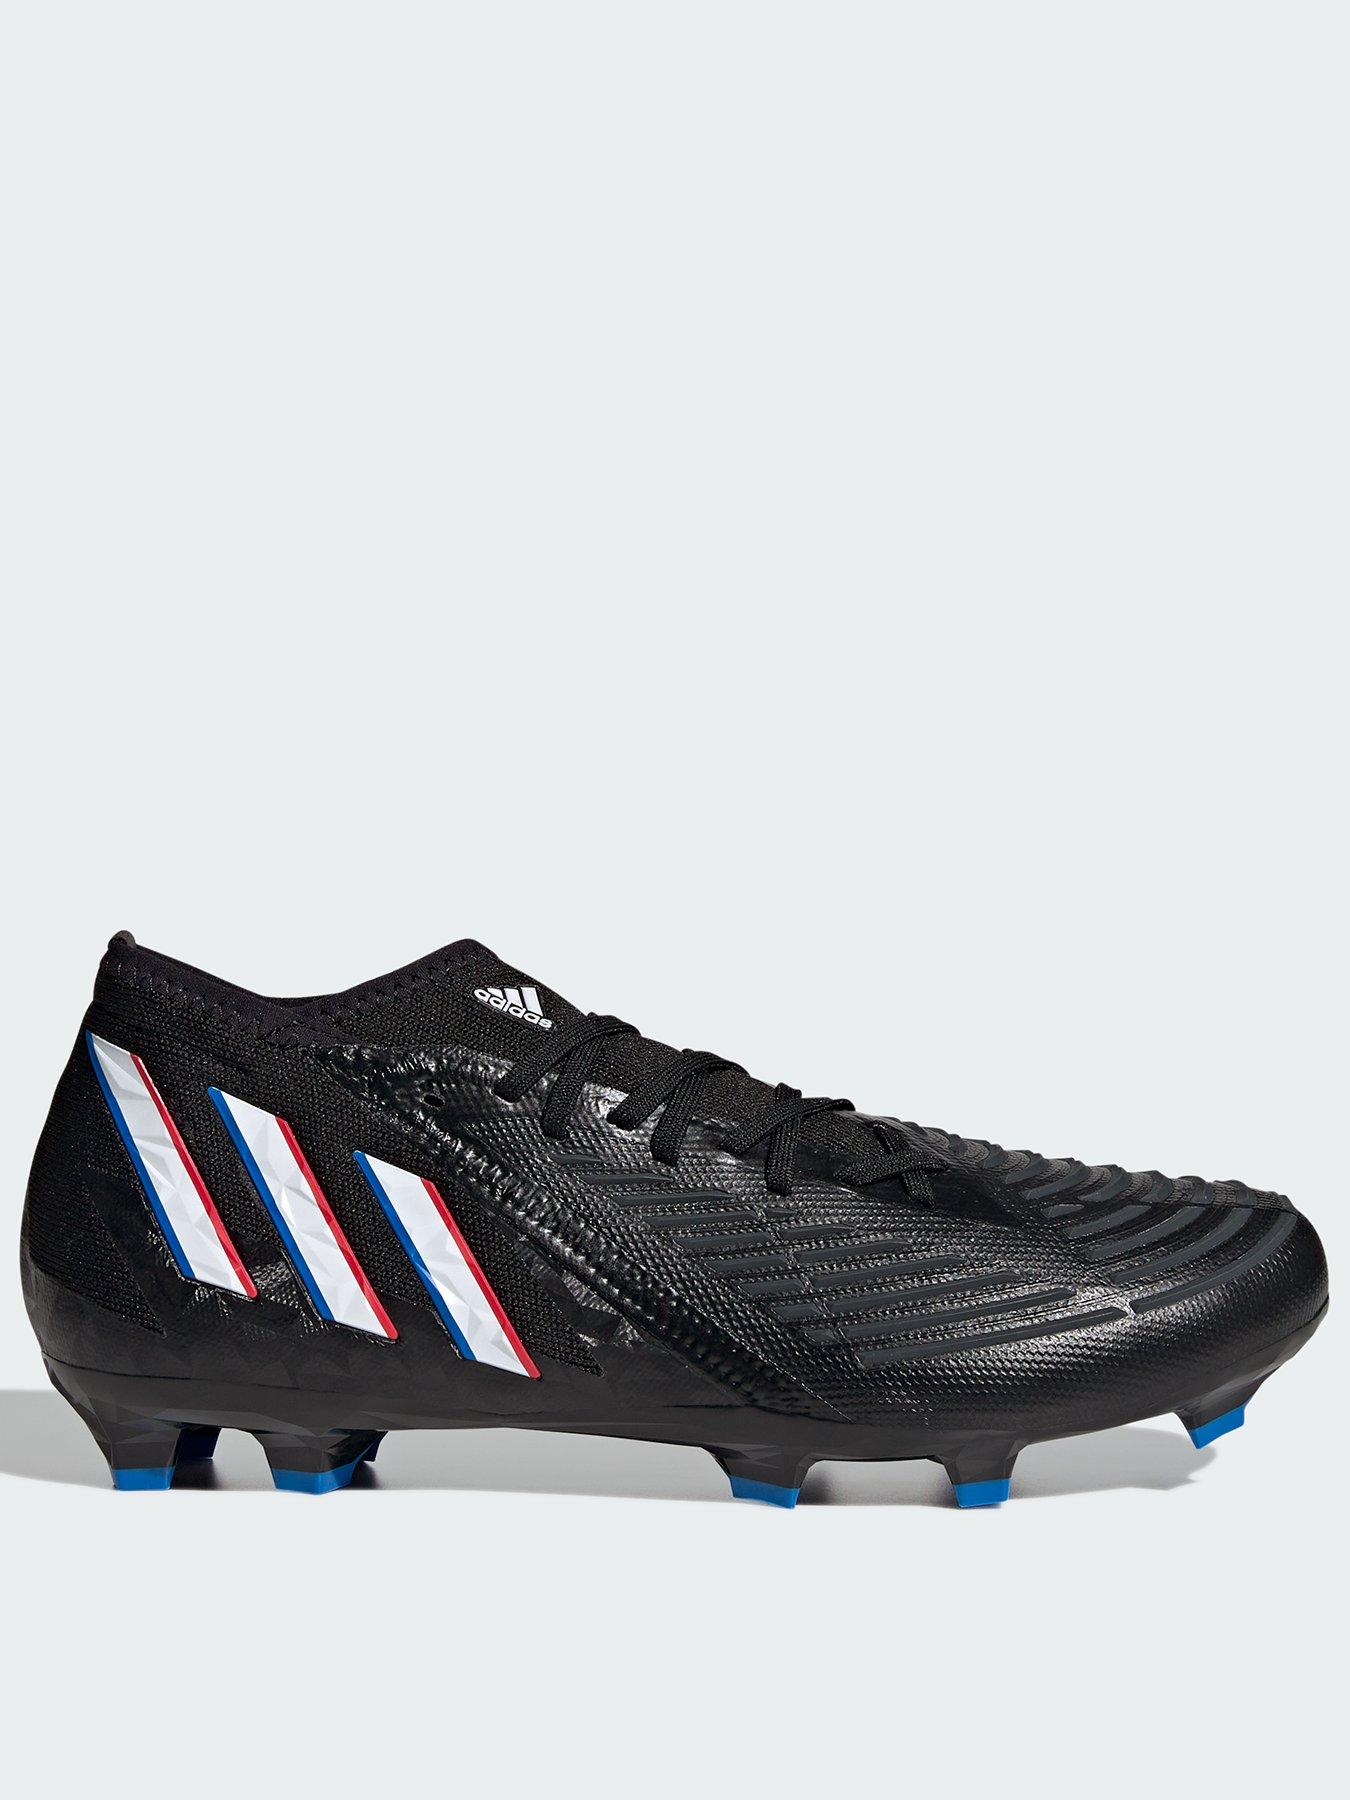 desenterrar Ceder aficionado adidas Mens Predator 20.2 Firm Ground Football Boots - Black | Very Ireland